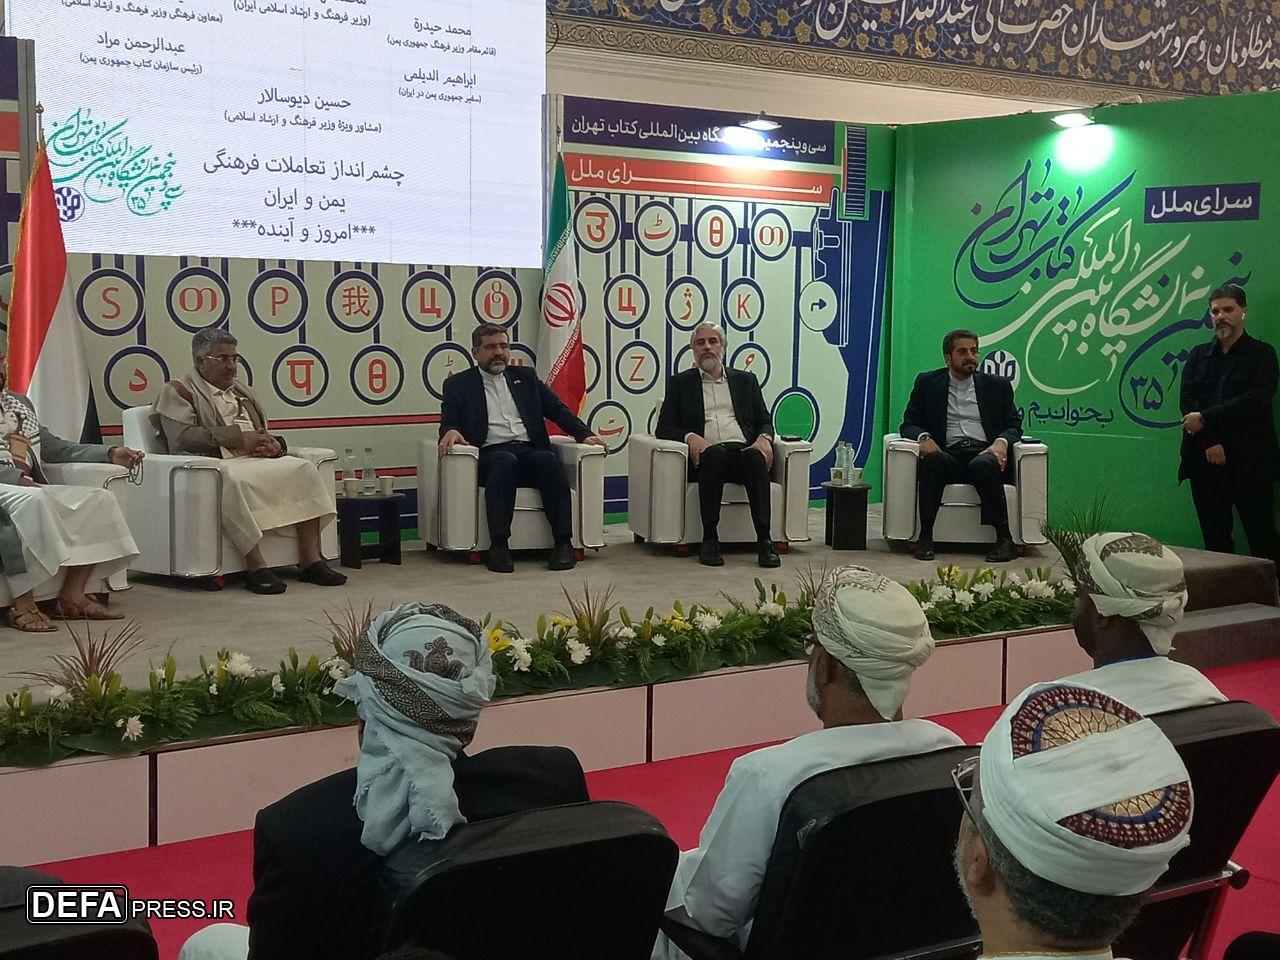 اسماعیلی: هیچ رویدادی در جهان اسلام بدون یاد غزه و فلسطین نباشد/ مفتخر به حضور یمن در نمایشگاه کتاب تهران هستیم